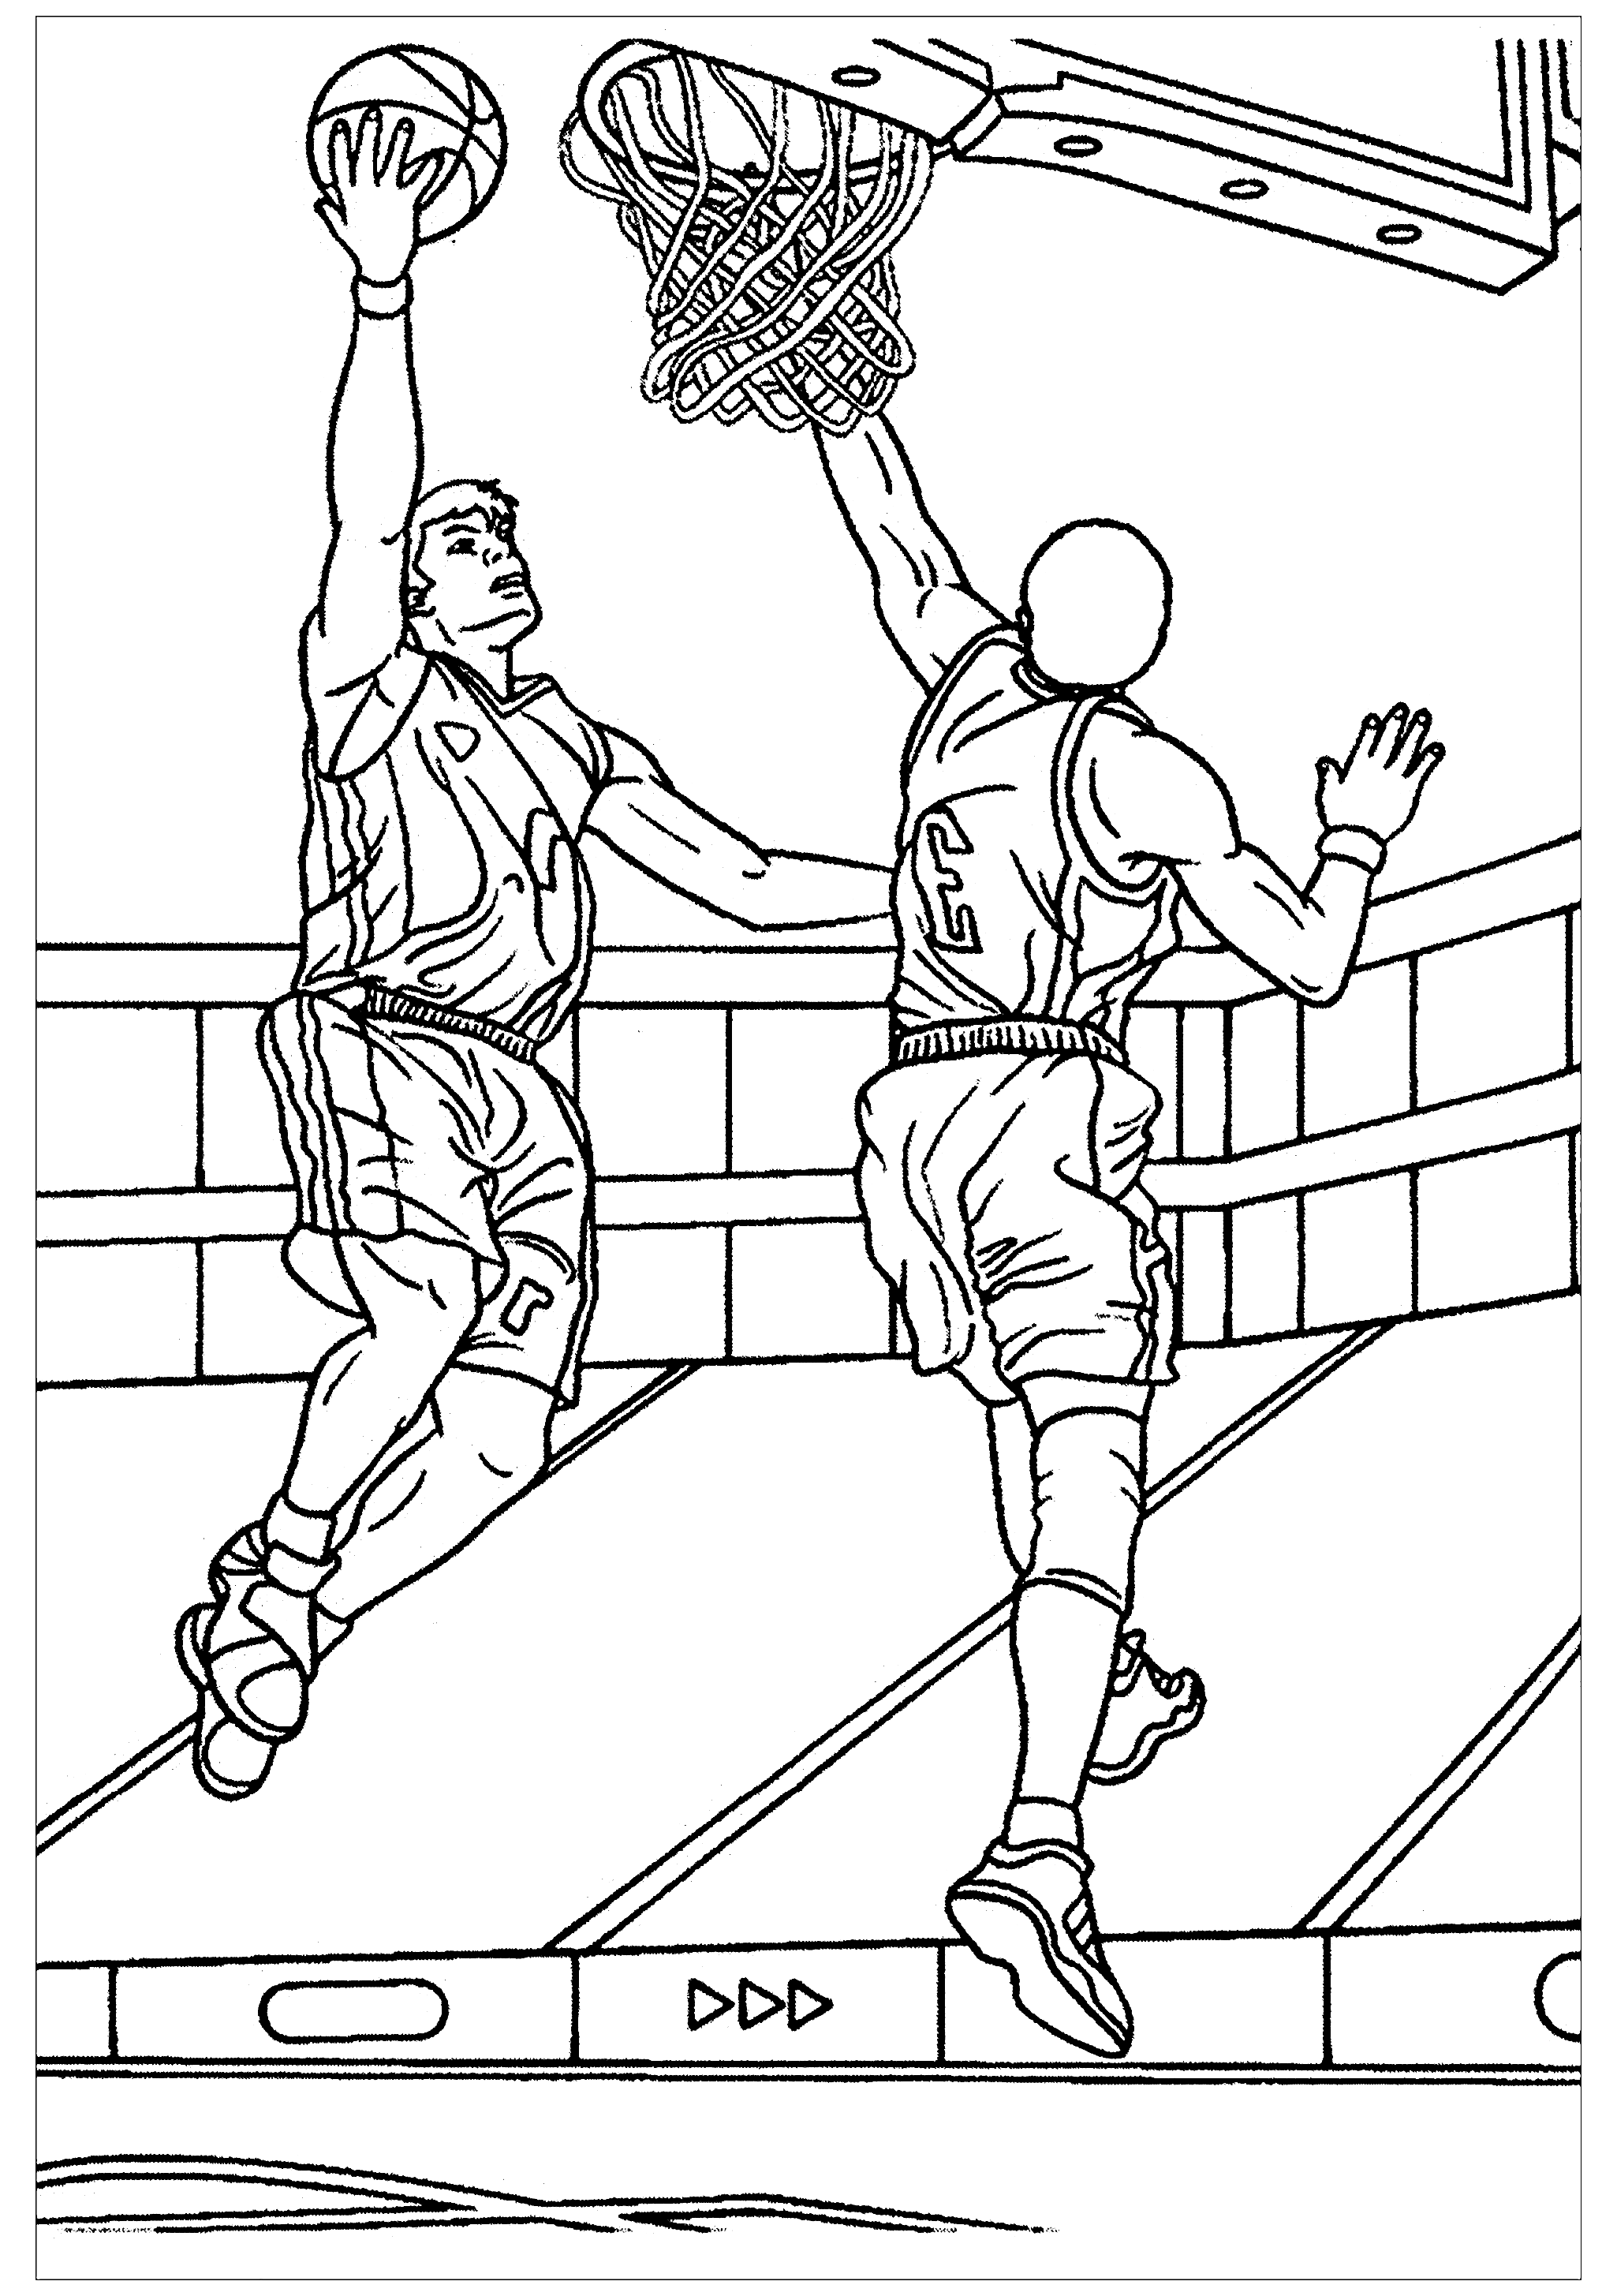 Desenho de basquetebol para colorir, fácil para crianças